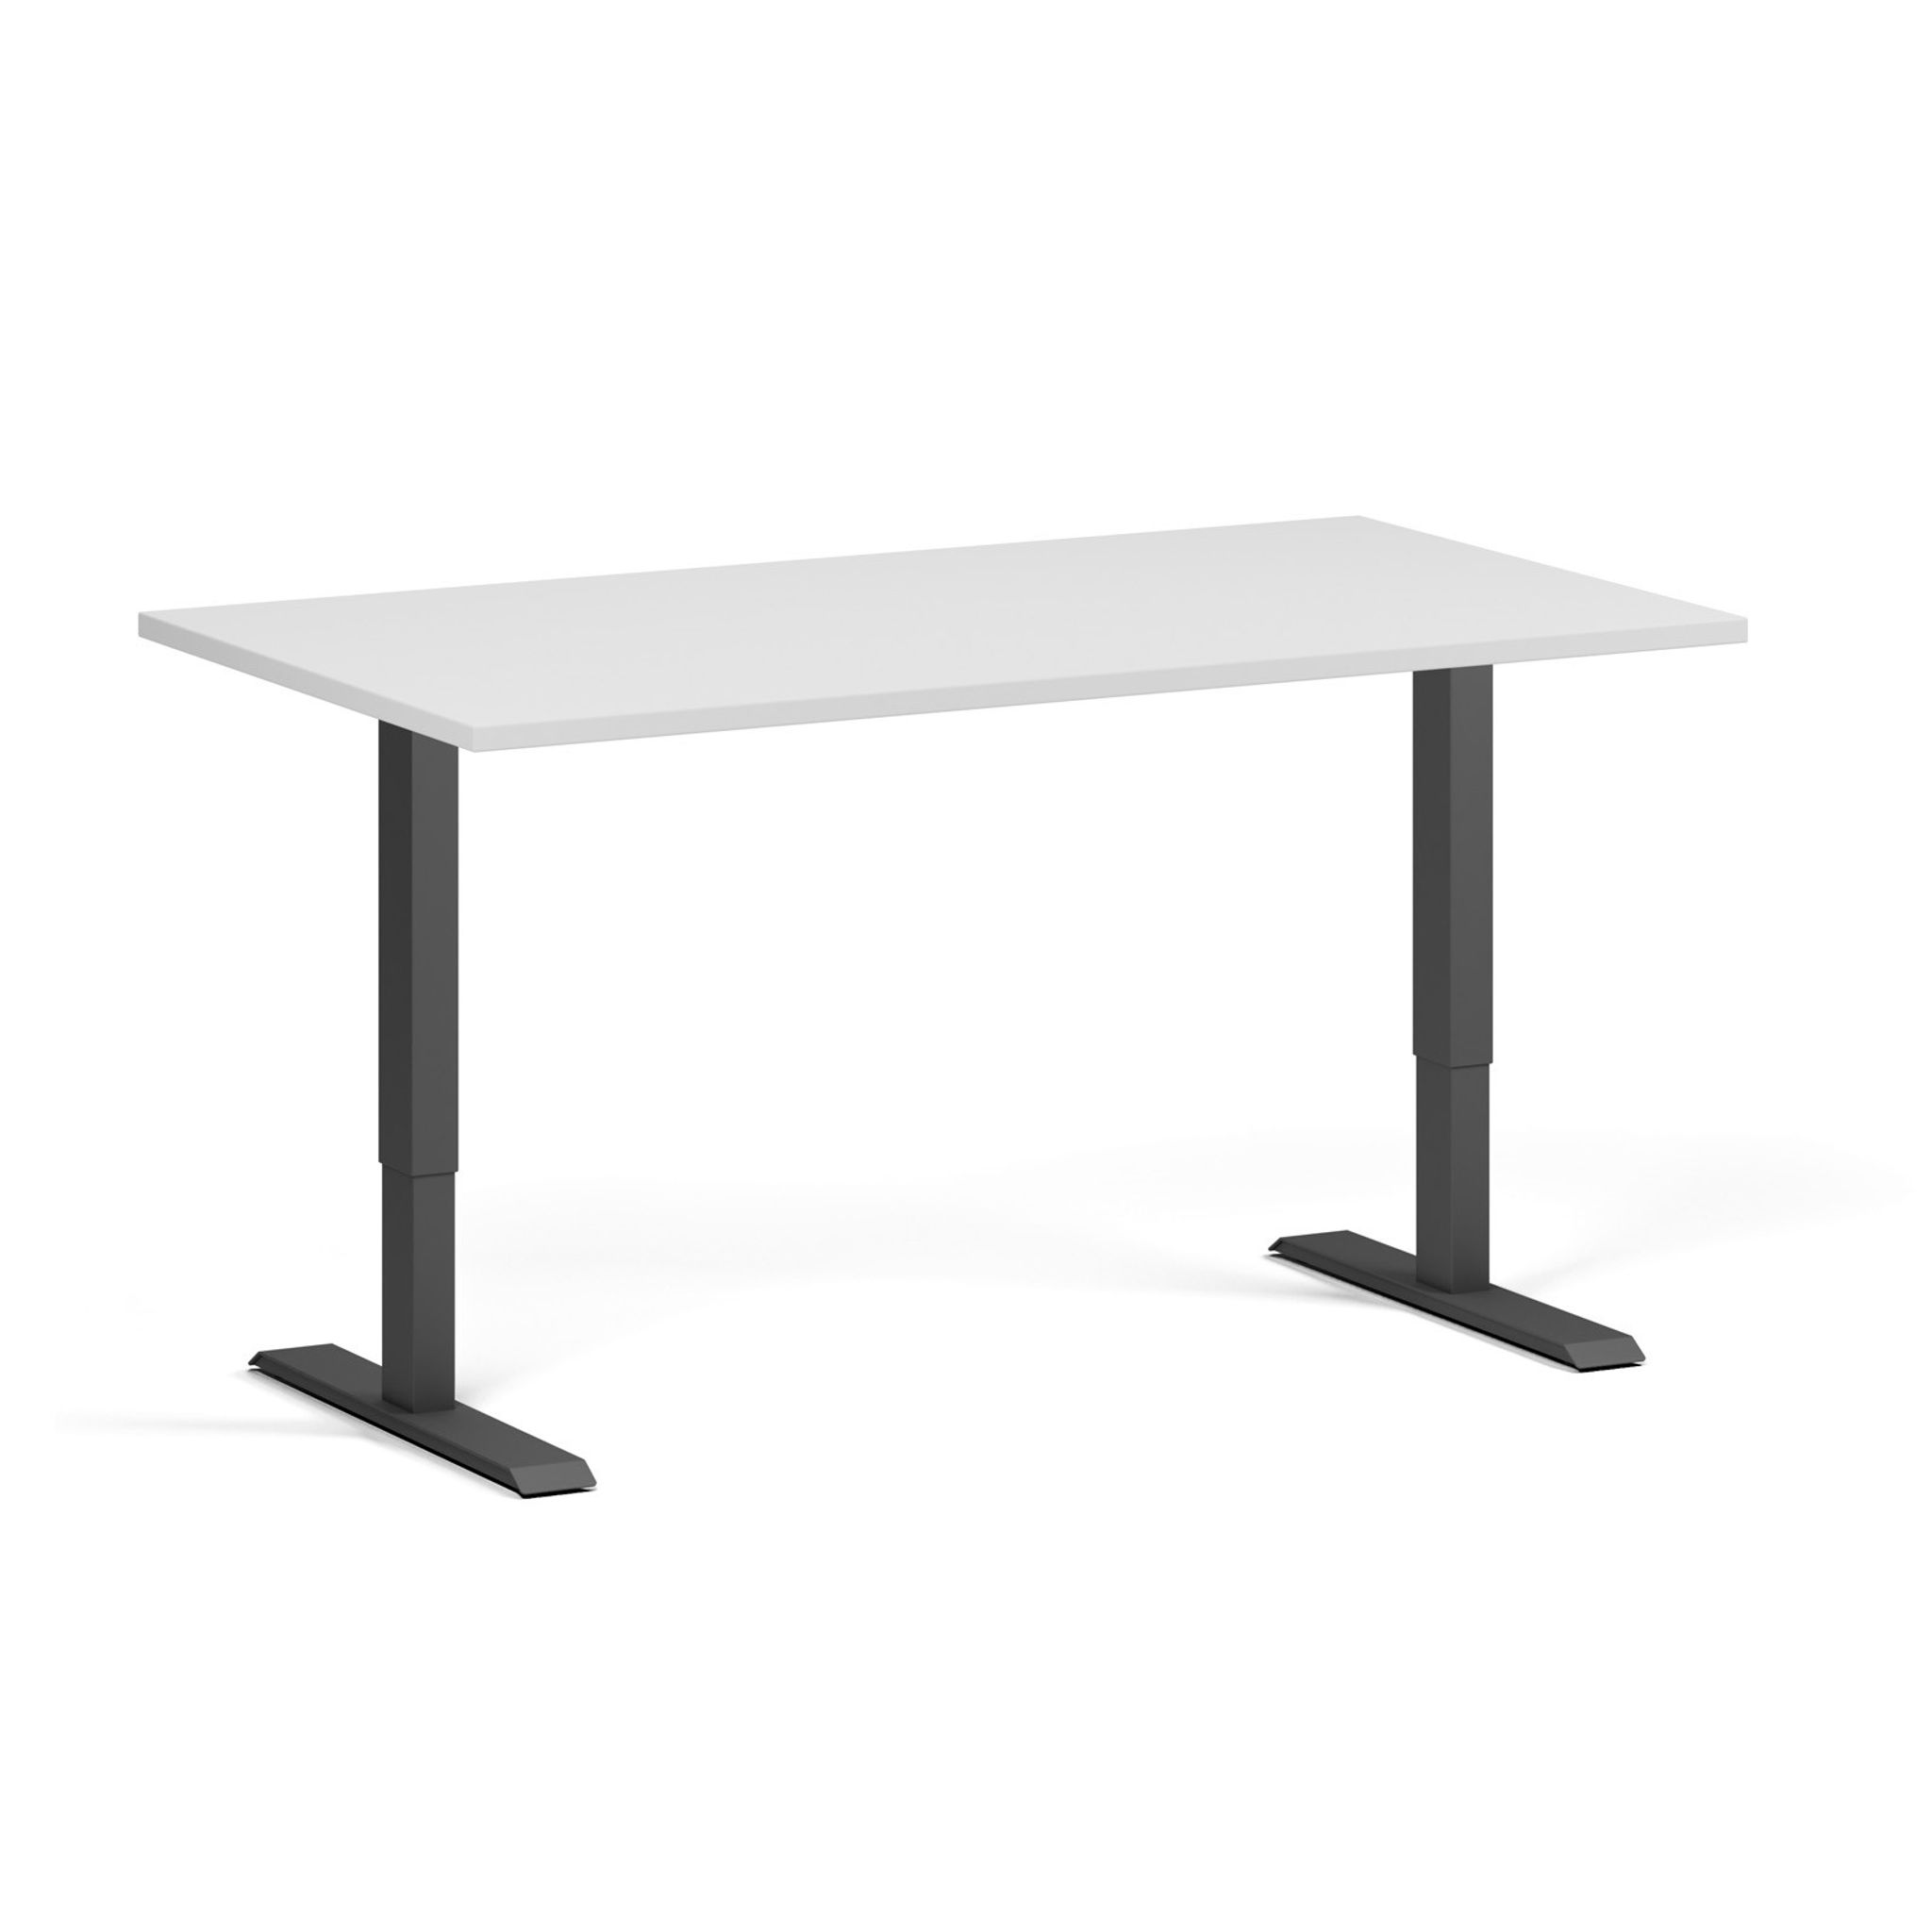 Výškově nastavitelný stůl, 1 motor, 745 - 1235 mm, deska 1400 x 800 mm, černá podnož, bílá